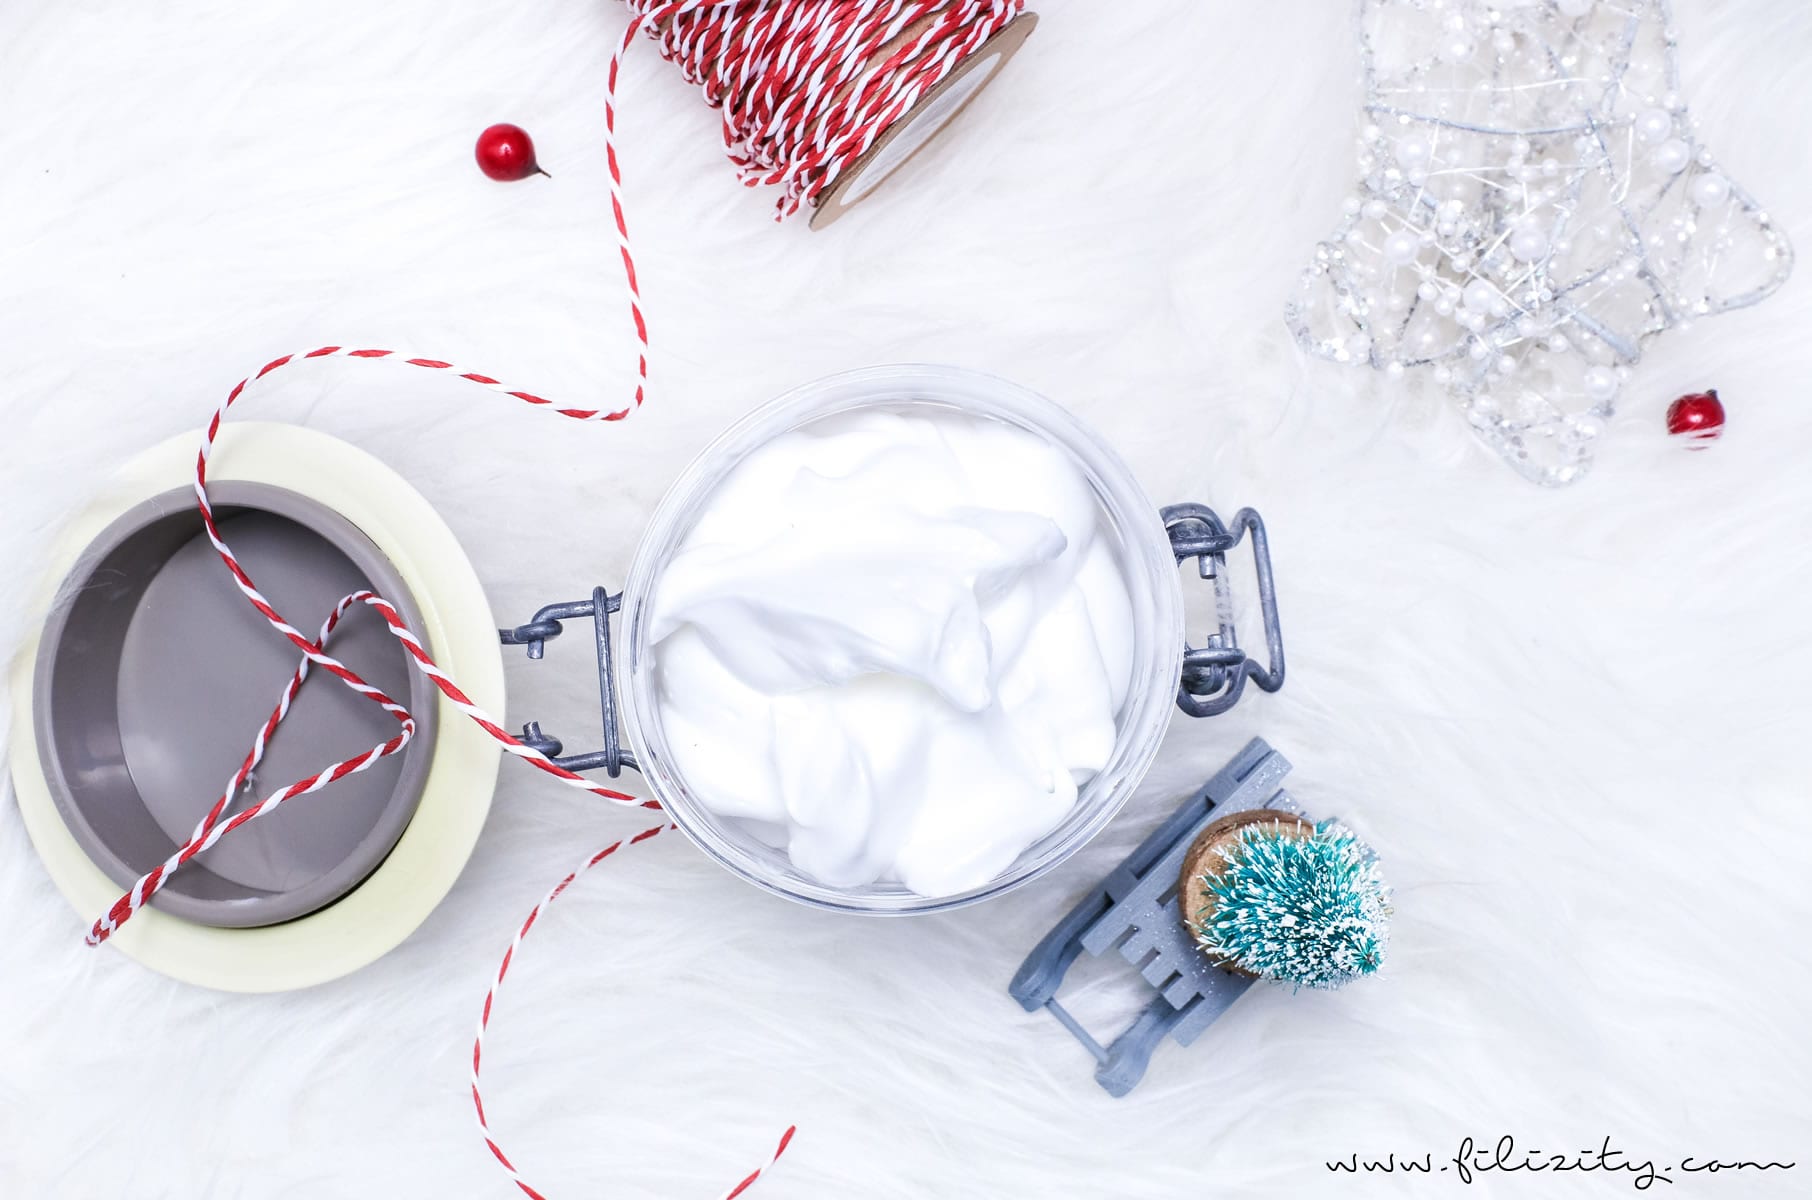 DIY Body Butter - Naturkosmetik selber machen | Tolle Geschenkidee zu Weihnachten, Valentinstag, Muttertag oder Geburtstag | Filizity.com | Beauty-Blog aus dem Rheinland #geschenkideen #weihnachten